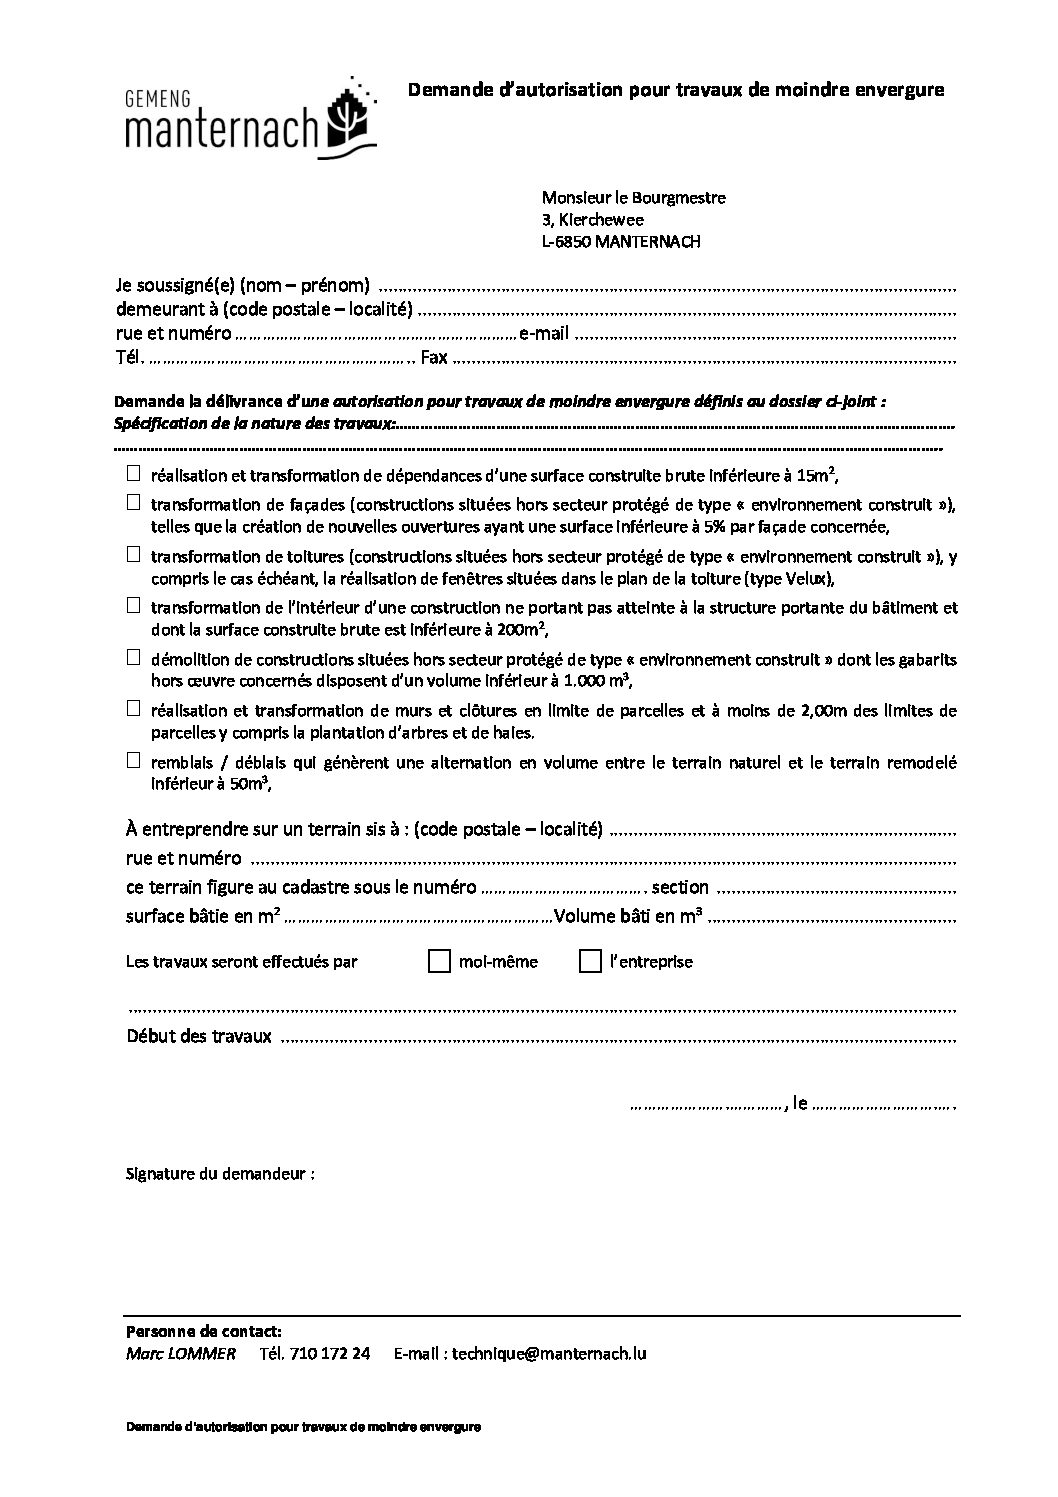 Technique - Demande d'autorisation pour travaux de moindre envergure 2021.02.25